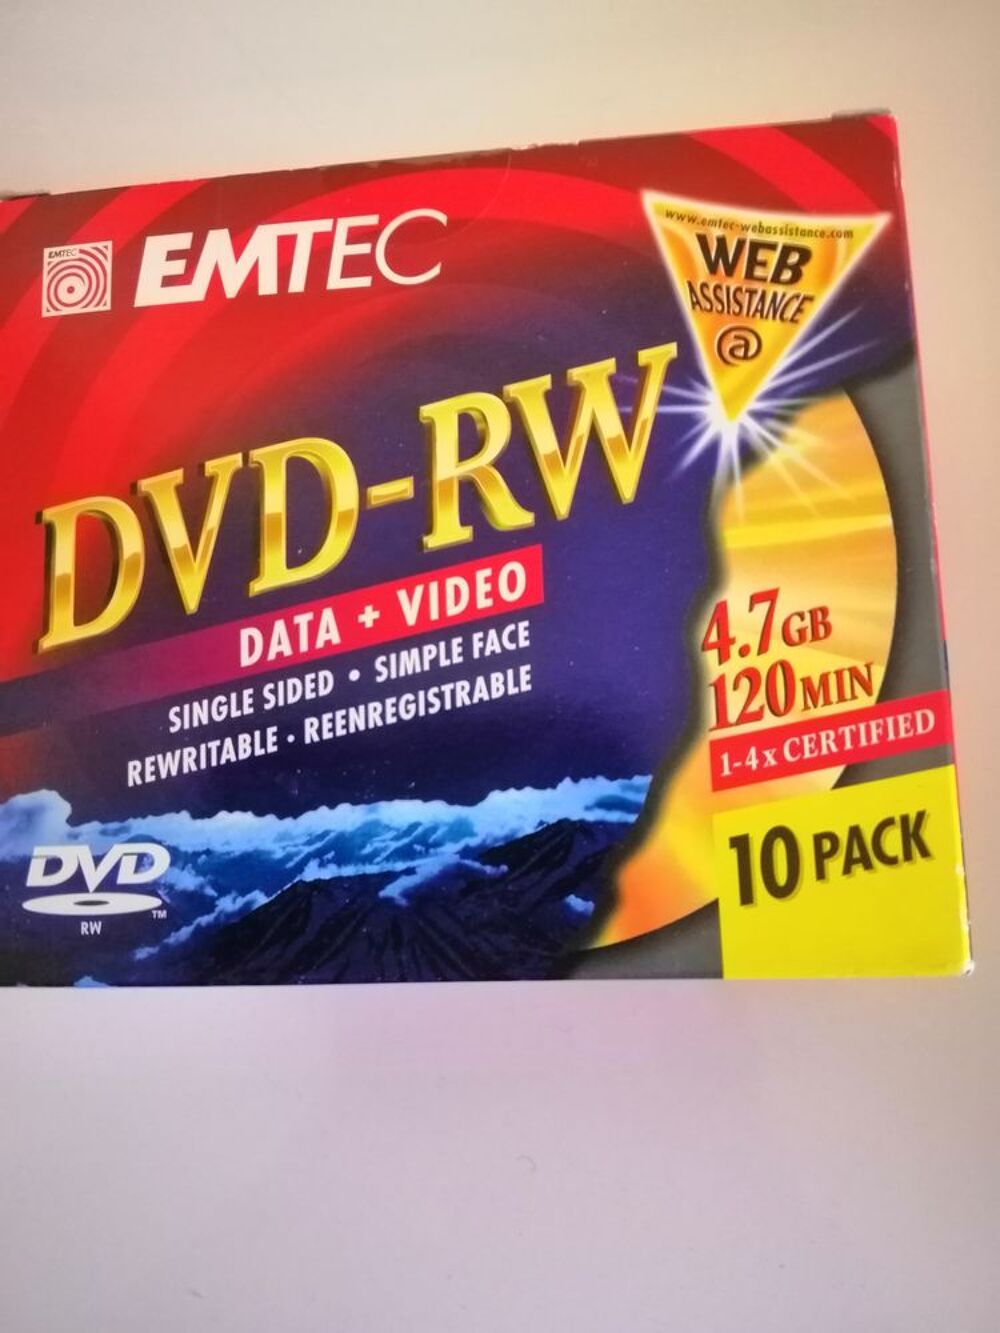 PACK NEUF 10 UNITES DVD -RW &quot;EMTEC &quot; REENREGISTRABLES Matriel informatique